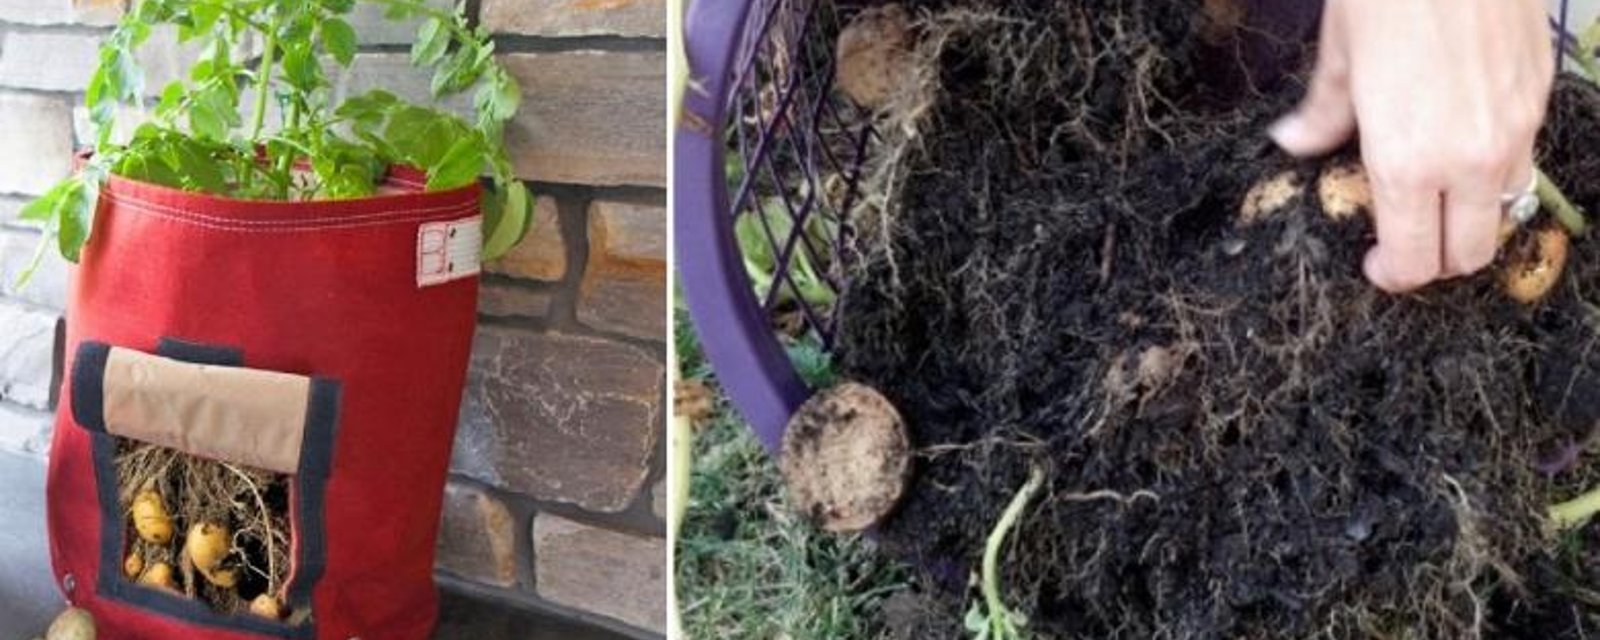 Comment faire pousser des pommes de terre rapidement et facilement, même sans jardin! 